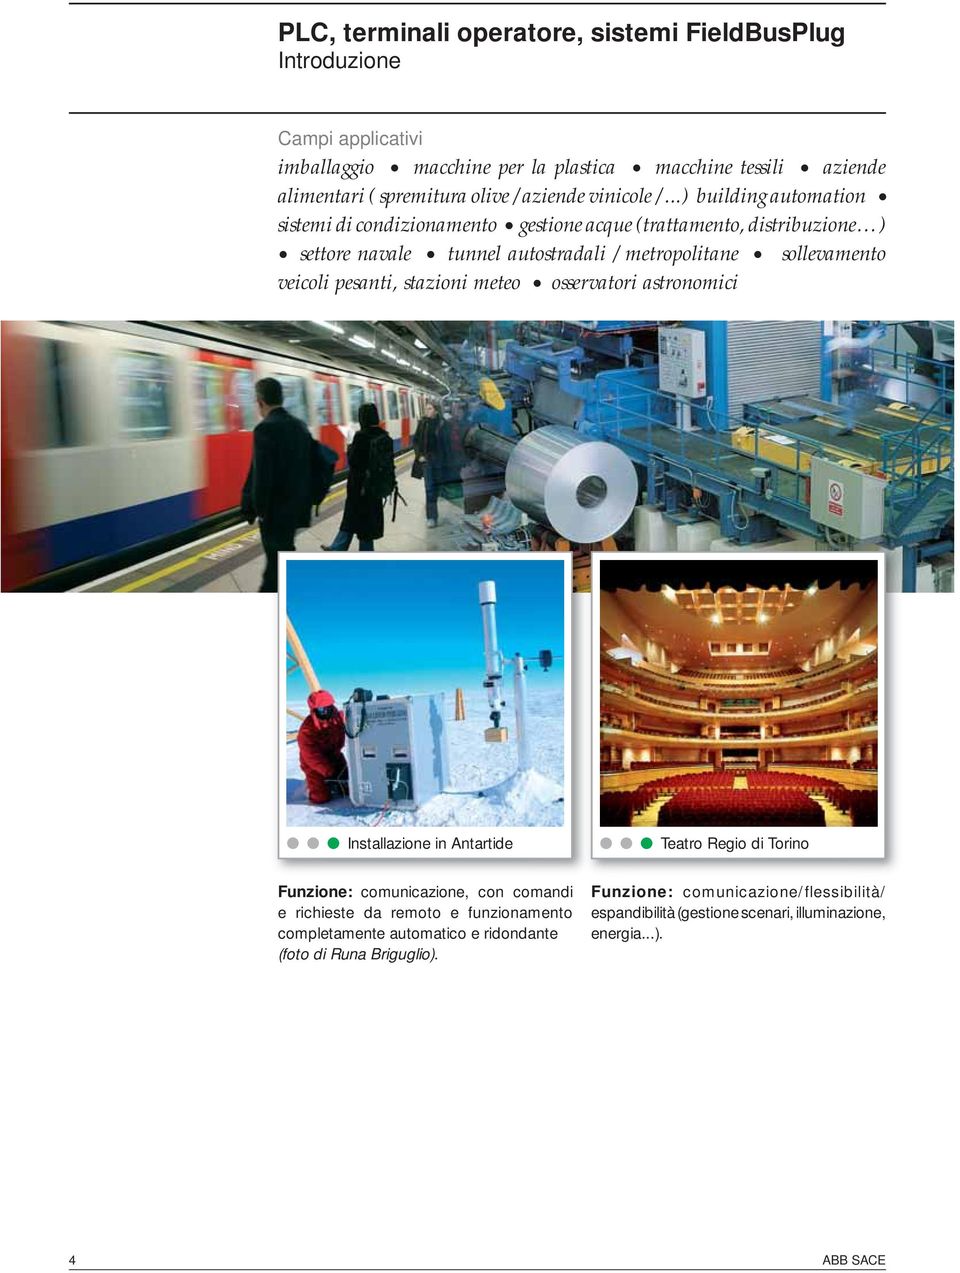 ..) building automation sistemi di condizionamento gestione acque (trattamento, distribuzione ) settore navale tunnel autostradali / metropolitane sollevamento veicoli pesanti,